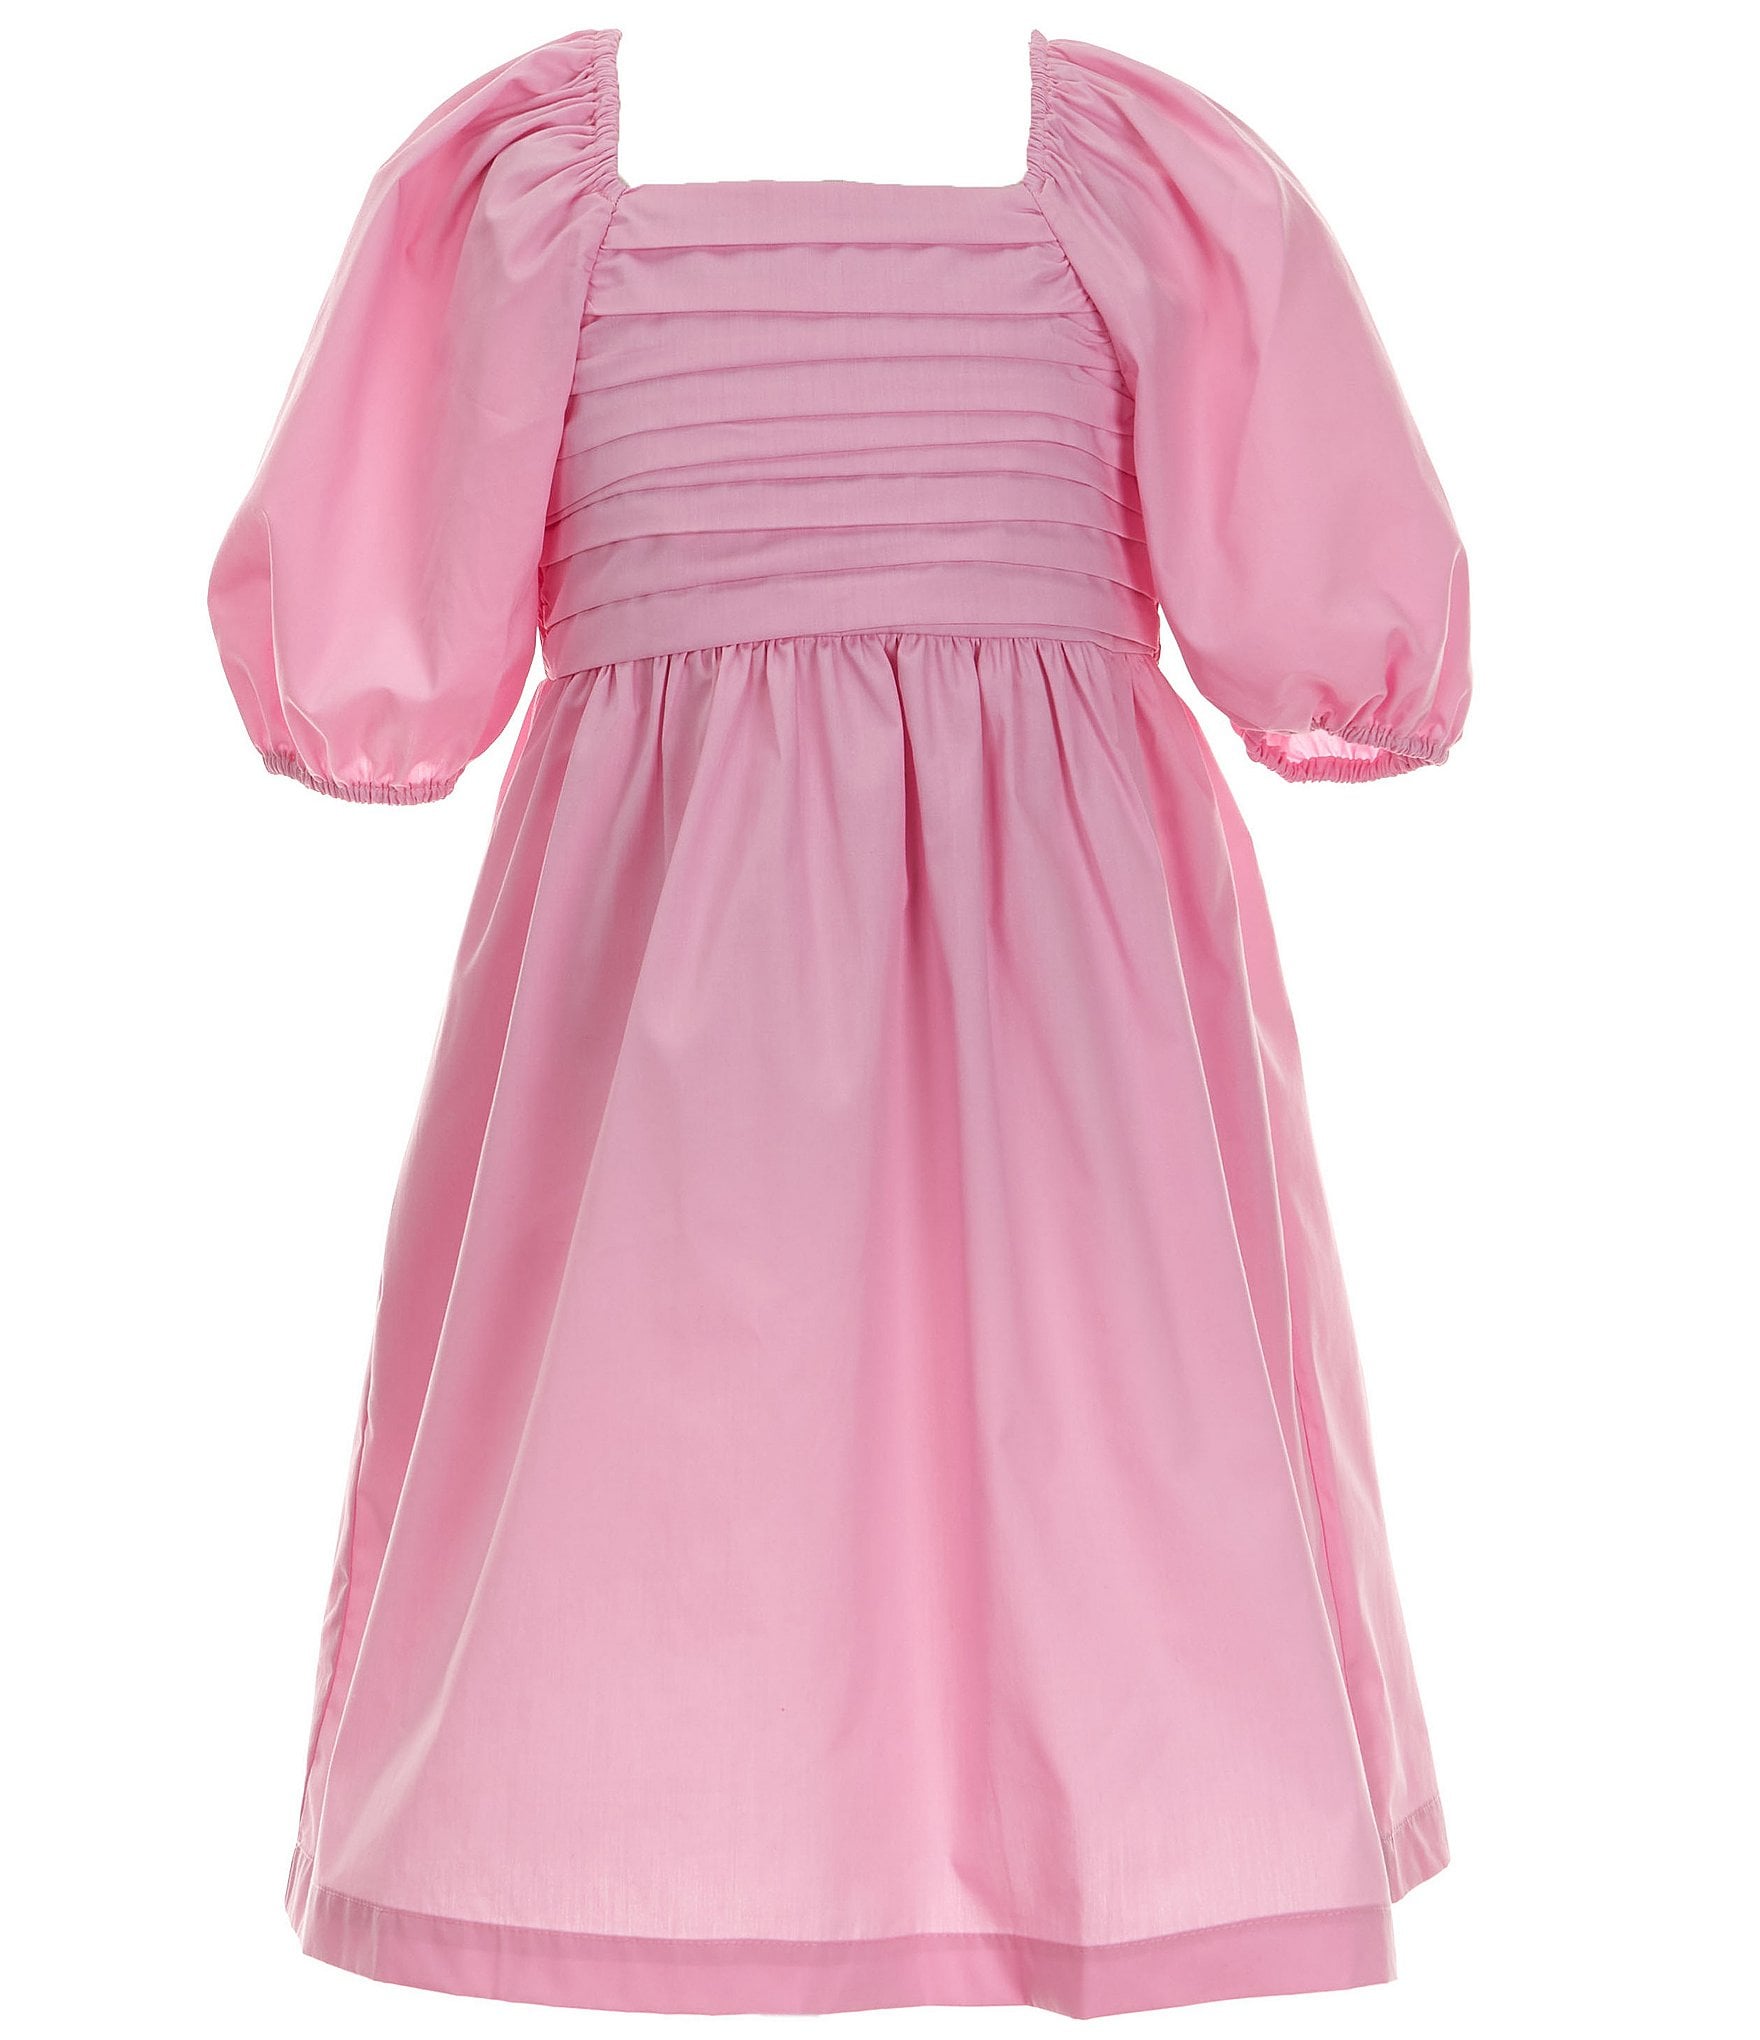 Copper Key Big Girl 7-16 Pink Pleated Dress | Dillard's